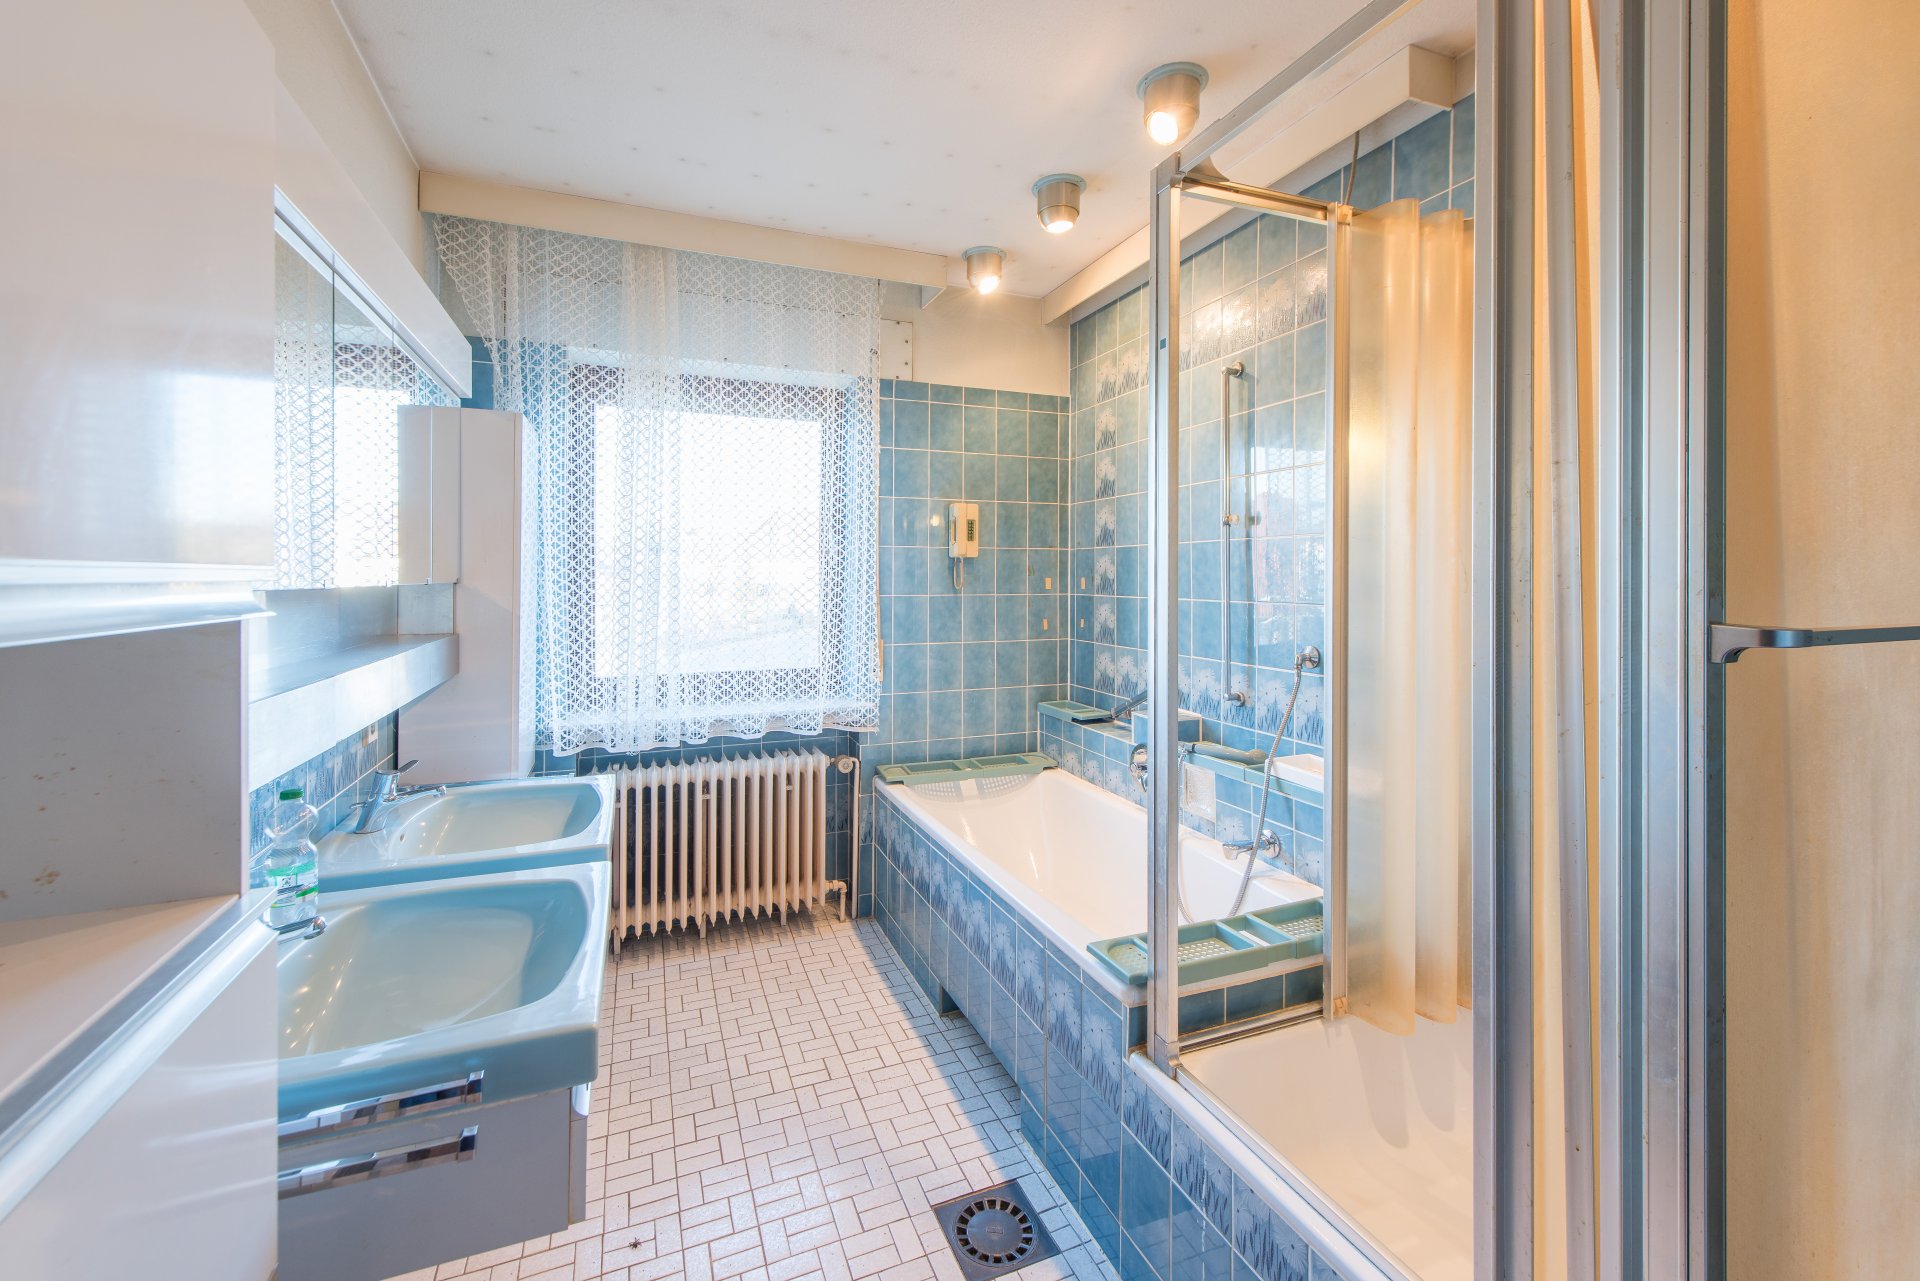 Das Bad bleibt Bad, muss aber saniert werden - Oliver Reifferscheid - Immobilienmakler Darmstadt